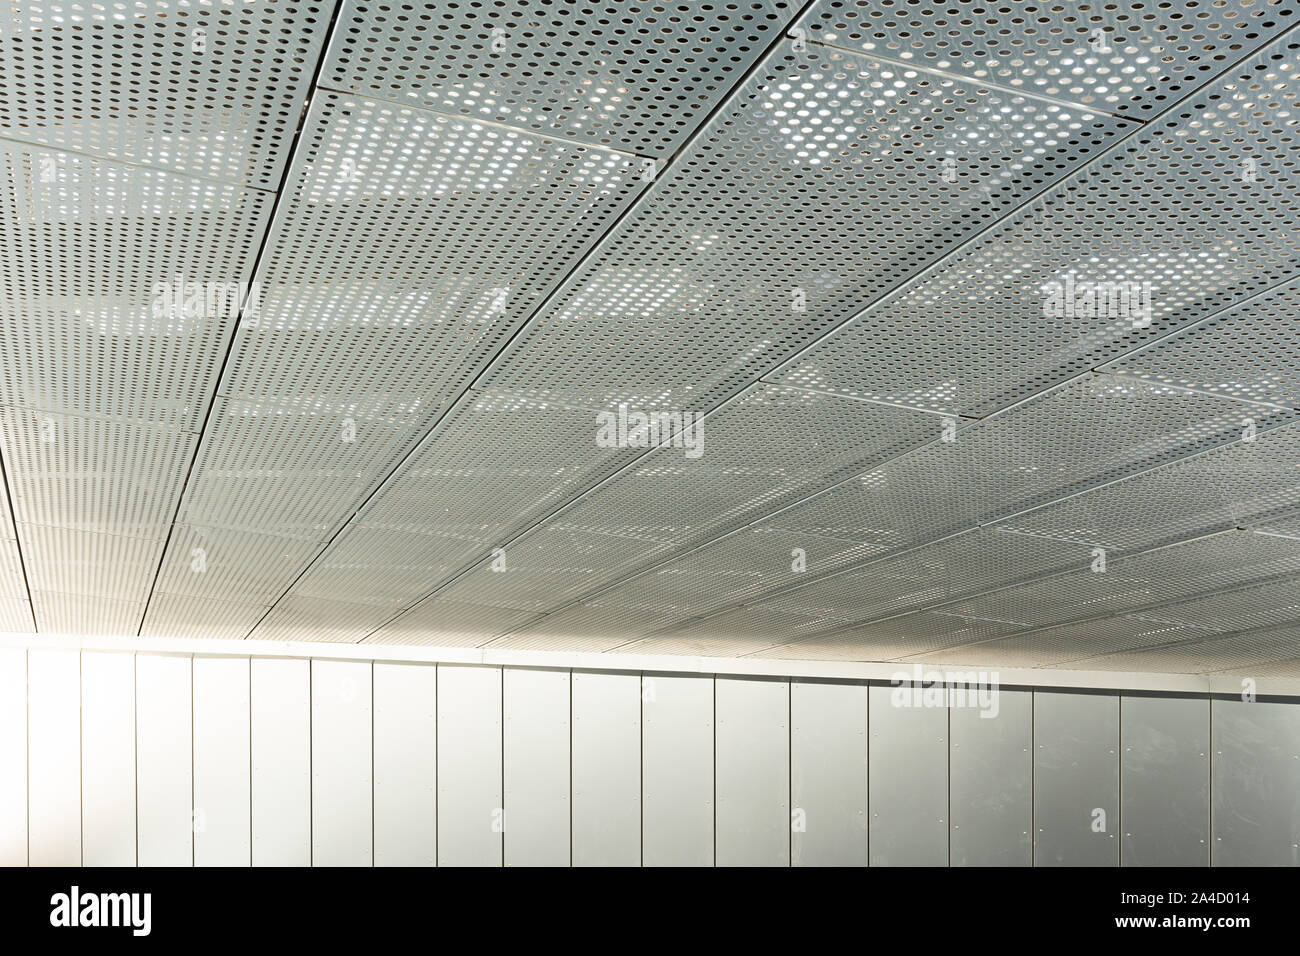 Aluminium Ceiling Panels Stockfotos Aluminium Ceiling